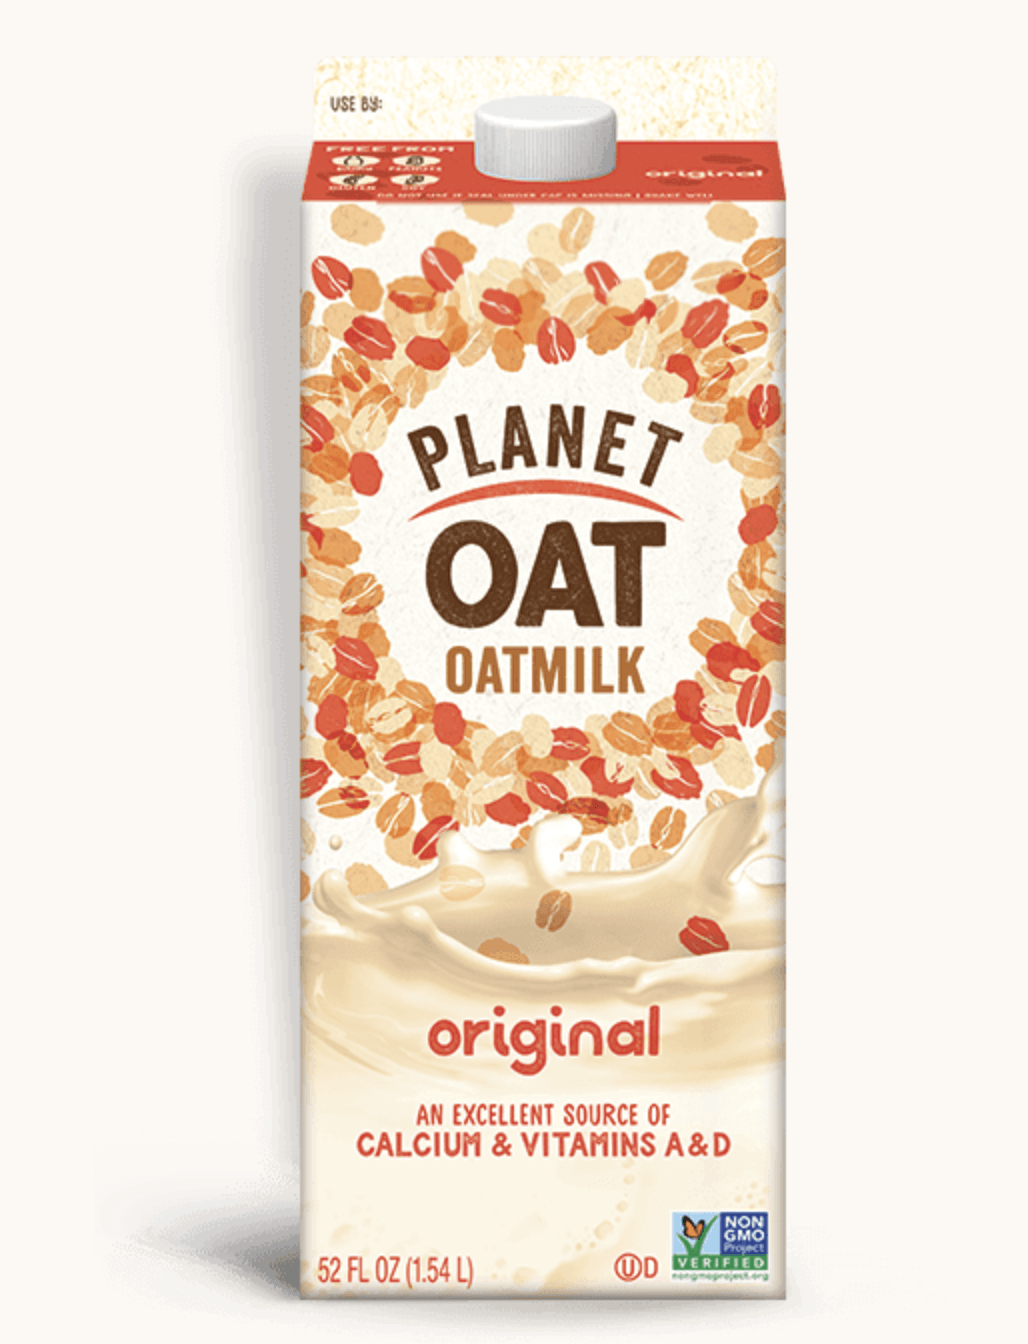 Oat Milk: Is it Gluten Free?